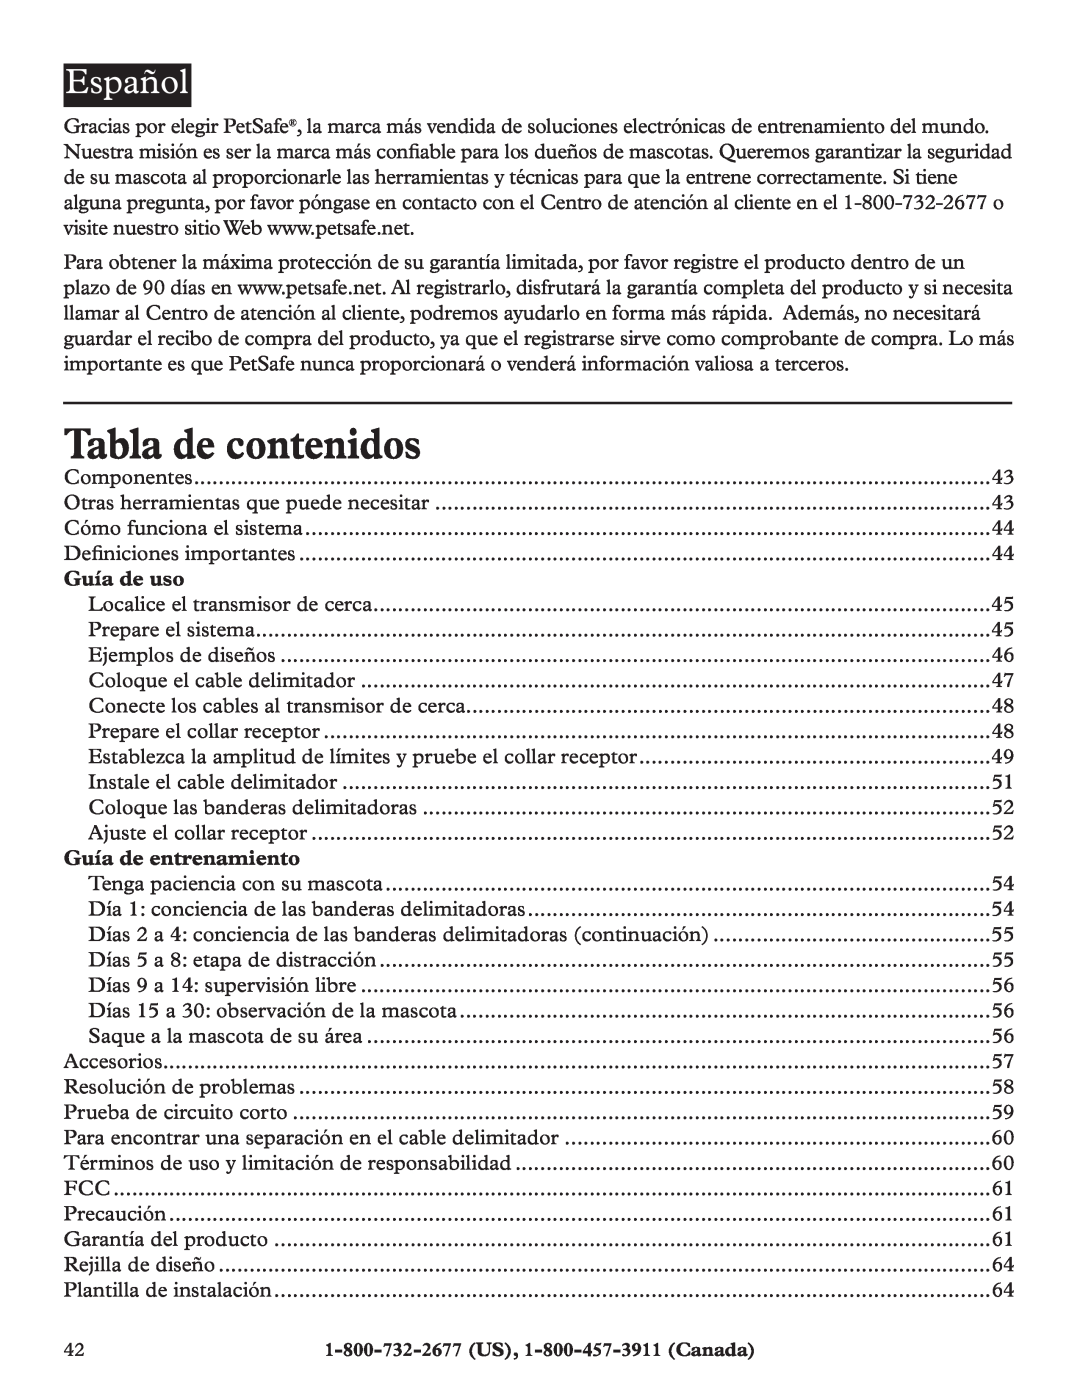 Petsafe RFA-200 manual Tabla de contenidos, Español, Guía de uso, Guía de entrenamiento 